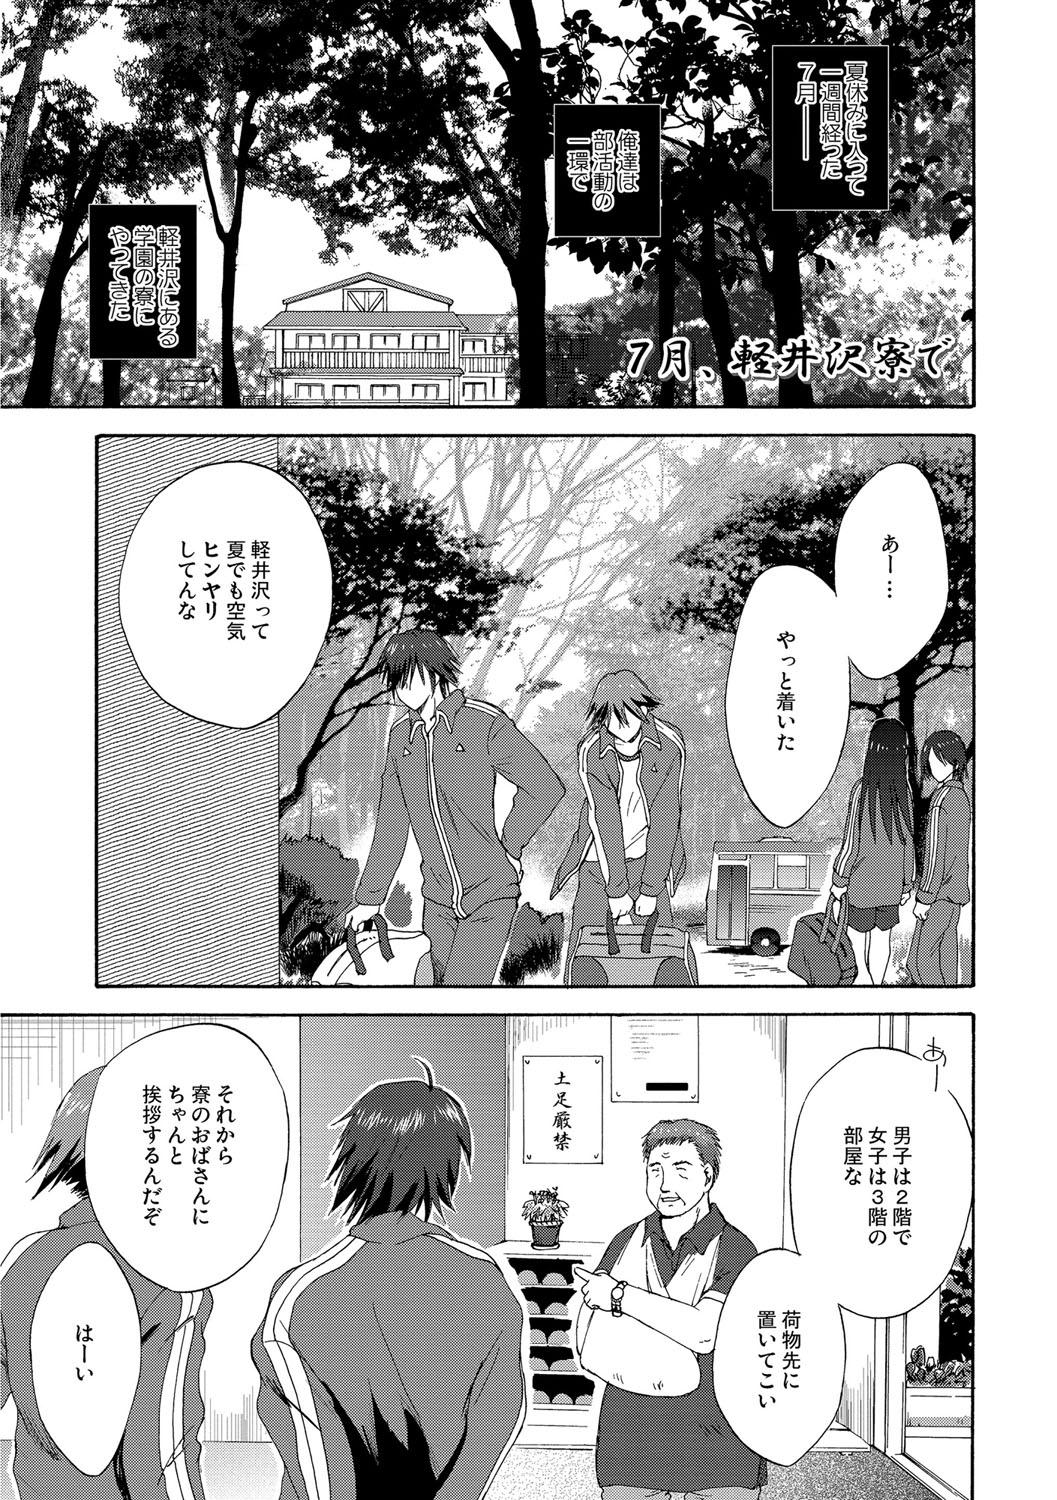 Sextoy Kairaku o Musaboru Dake no Koui Spooning - Page 4